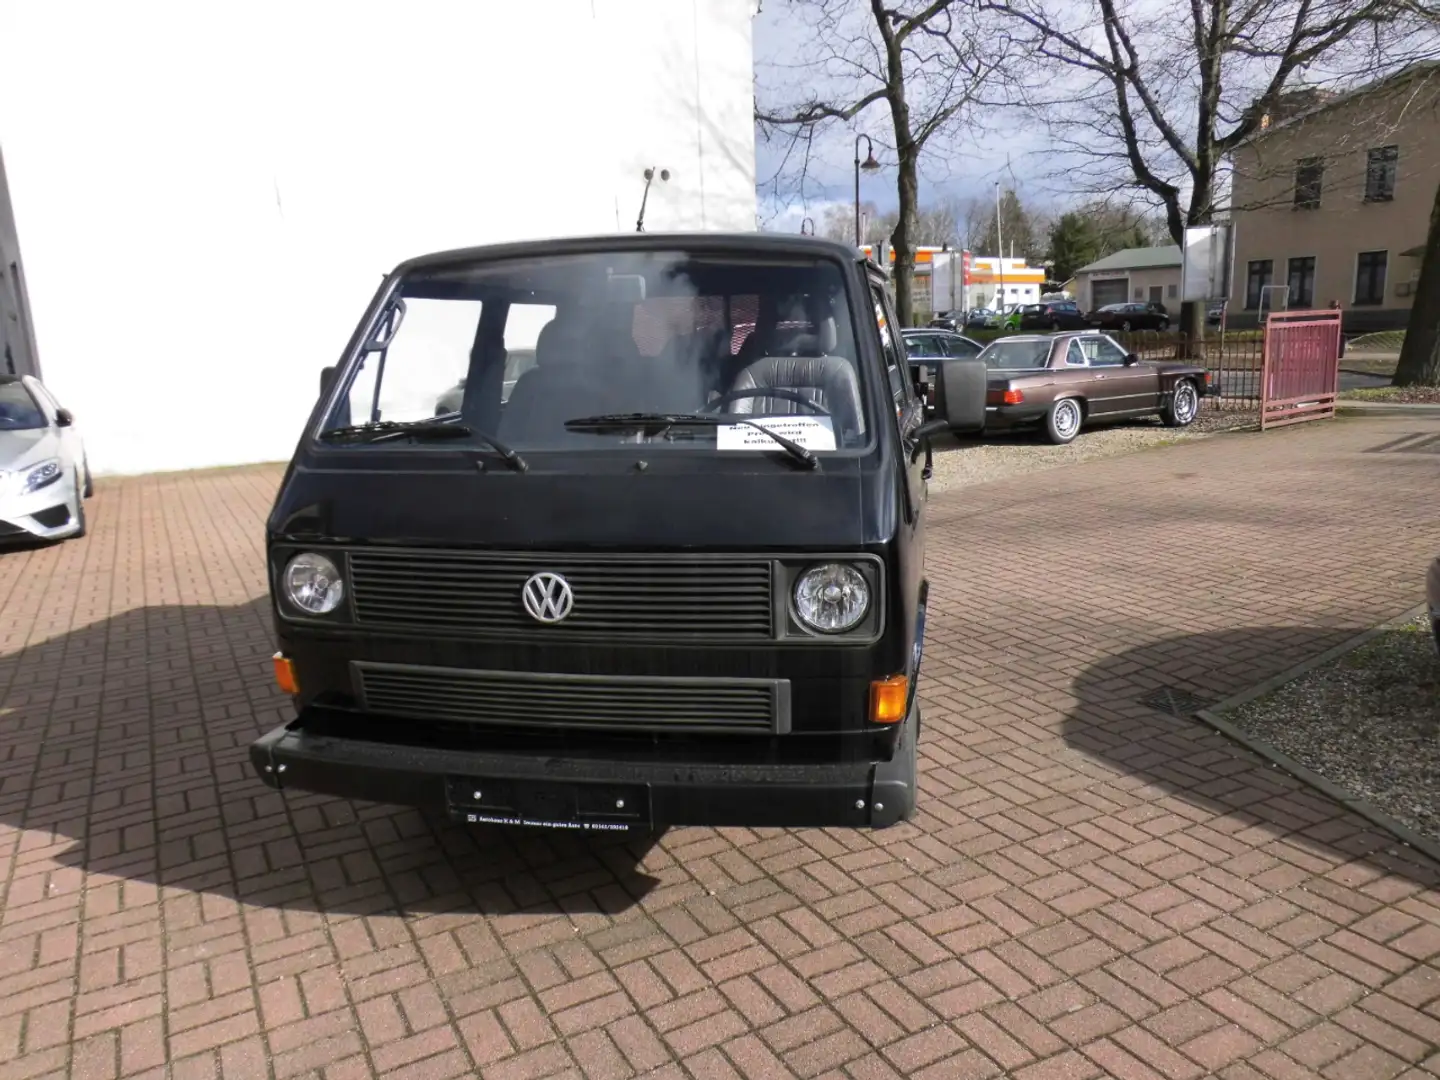 Volkswagen T3 Transporter in Schwarz gebraucht in Neuenhagen / bei Berlin  für € 9.990,-